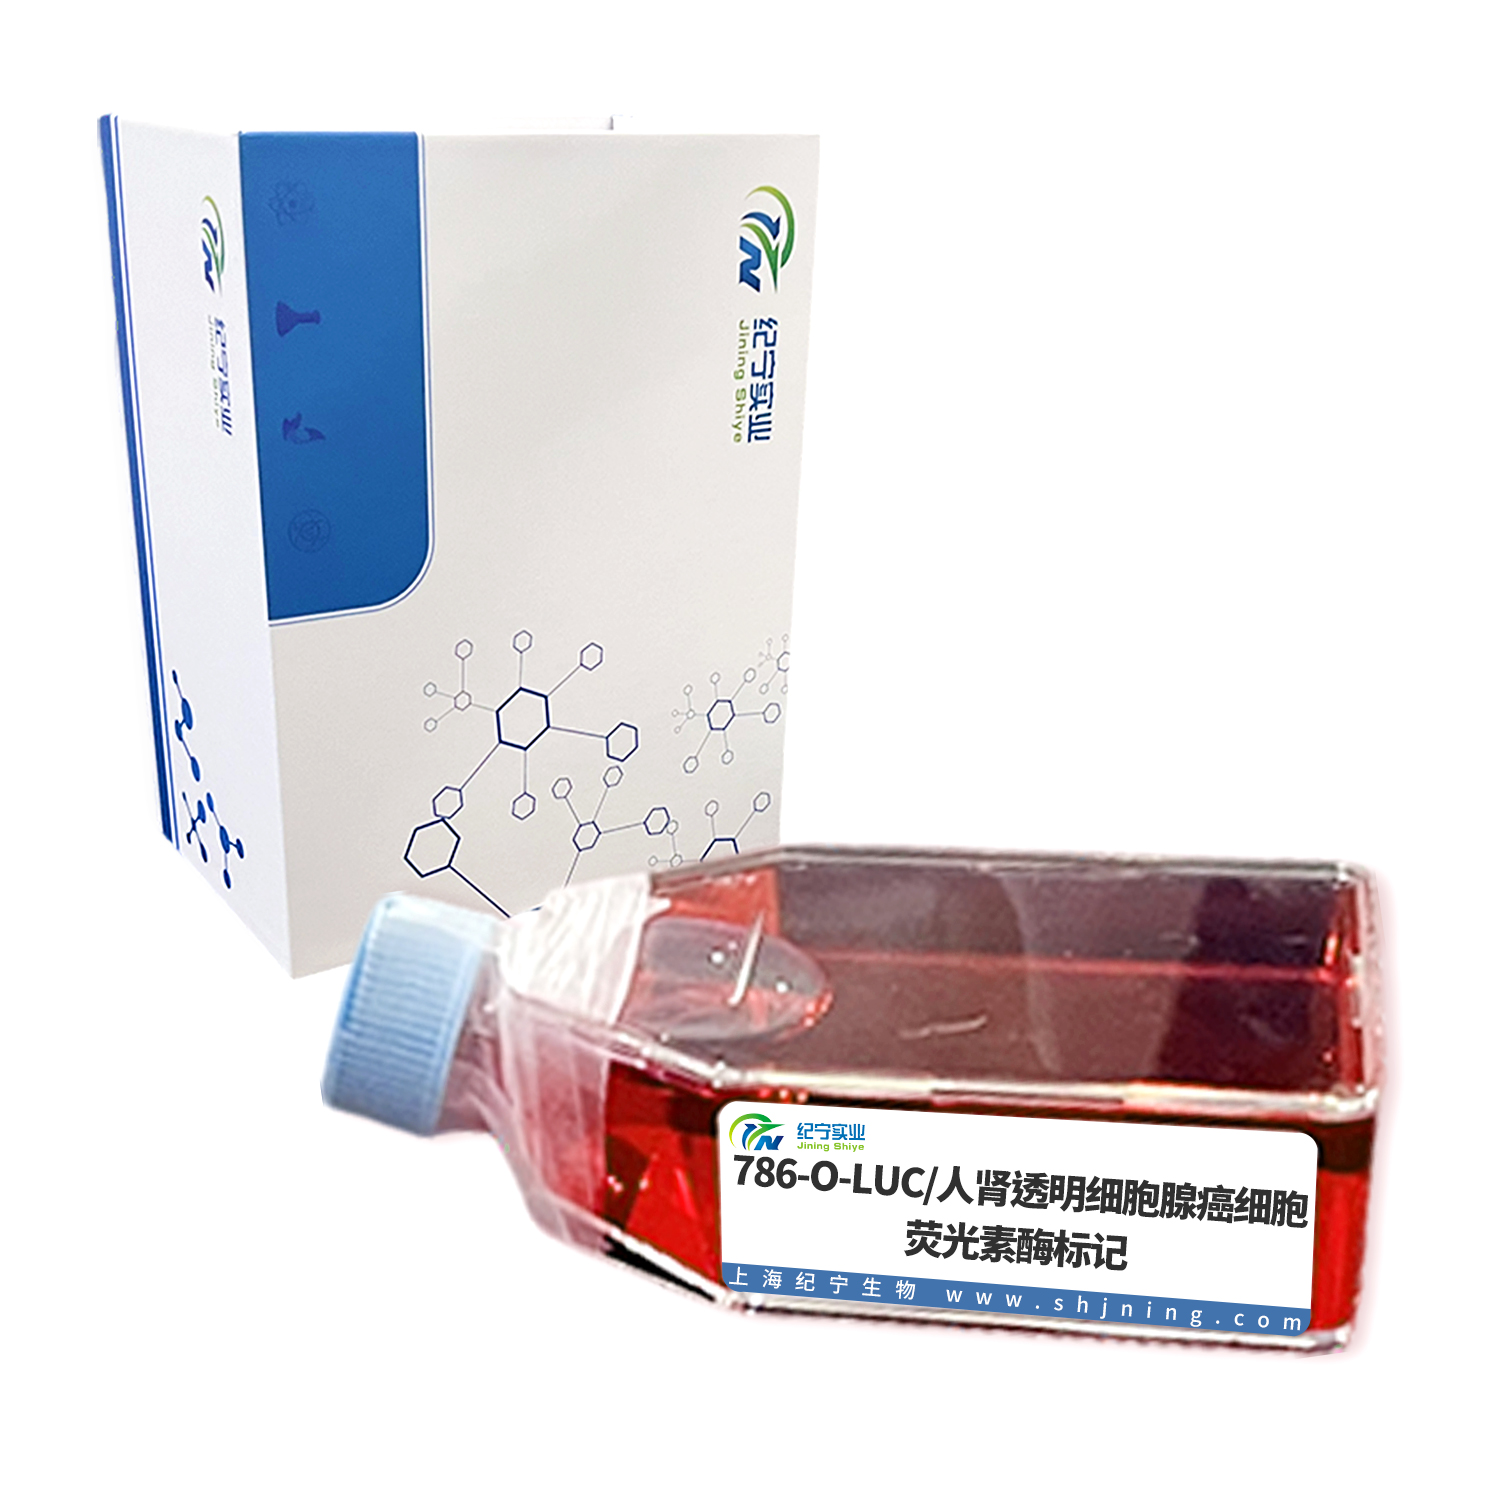 786-O-LUC/人肾透明细胞腺癌细胞-荧光素酶标记